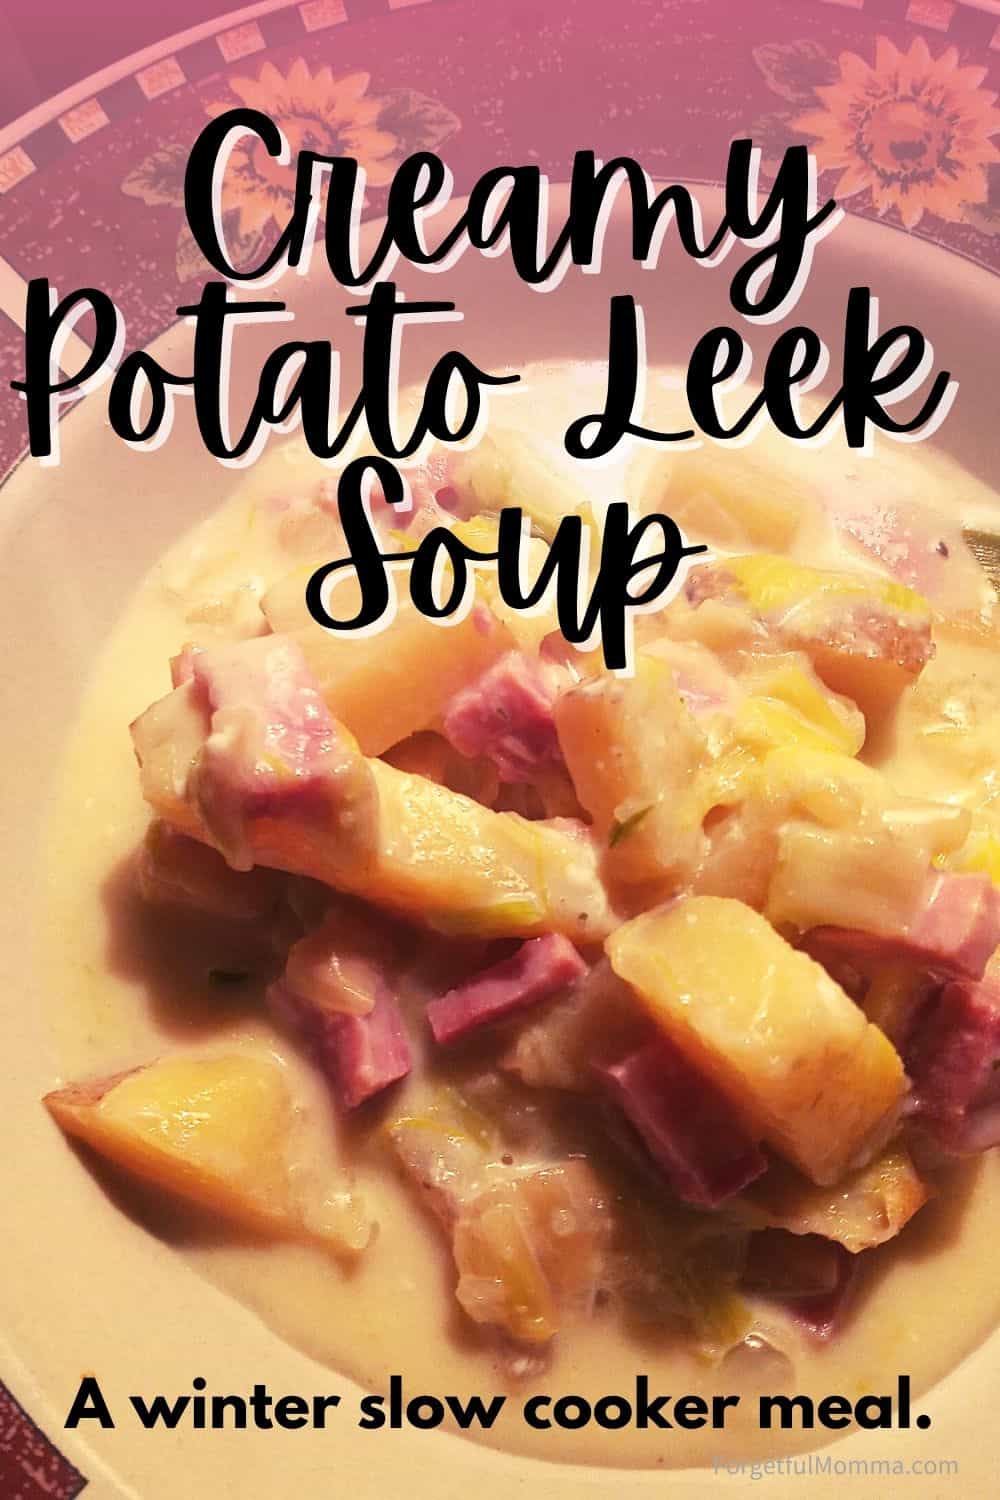 Creamy Potato Leek soup Title image